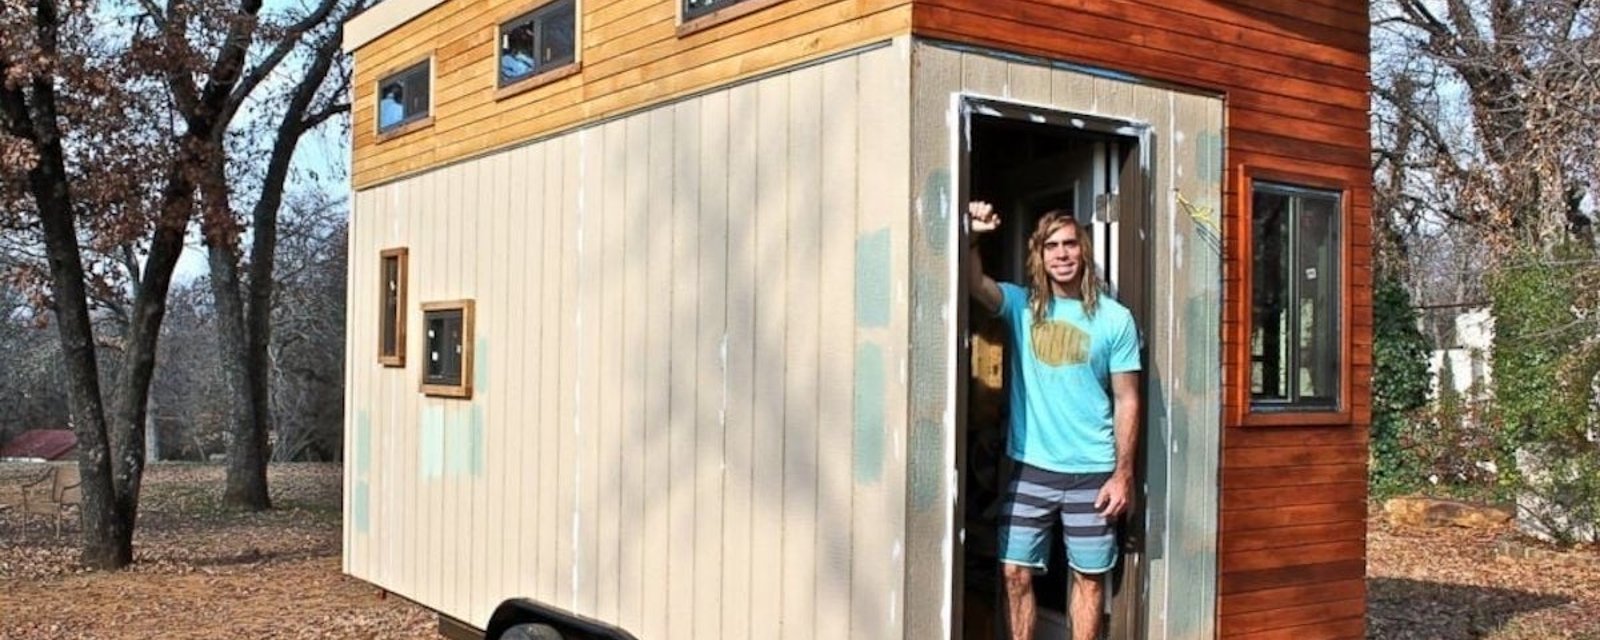 Un étudiant a construit une mini maison pour sortir de ses dettes